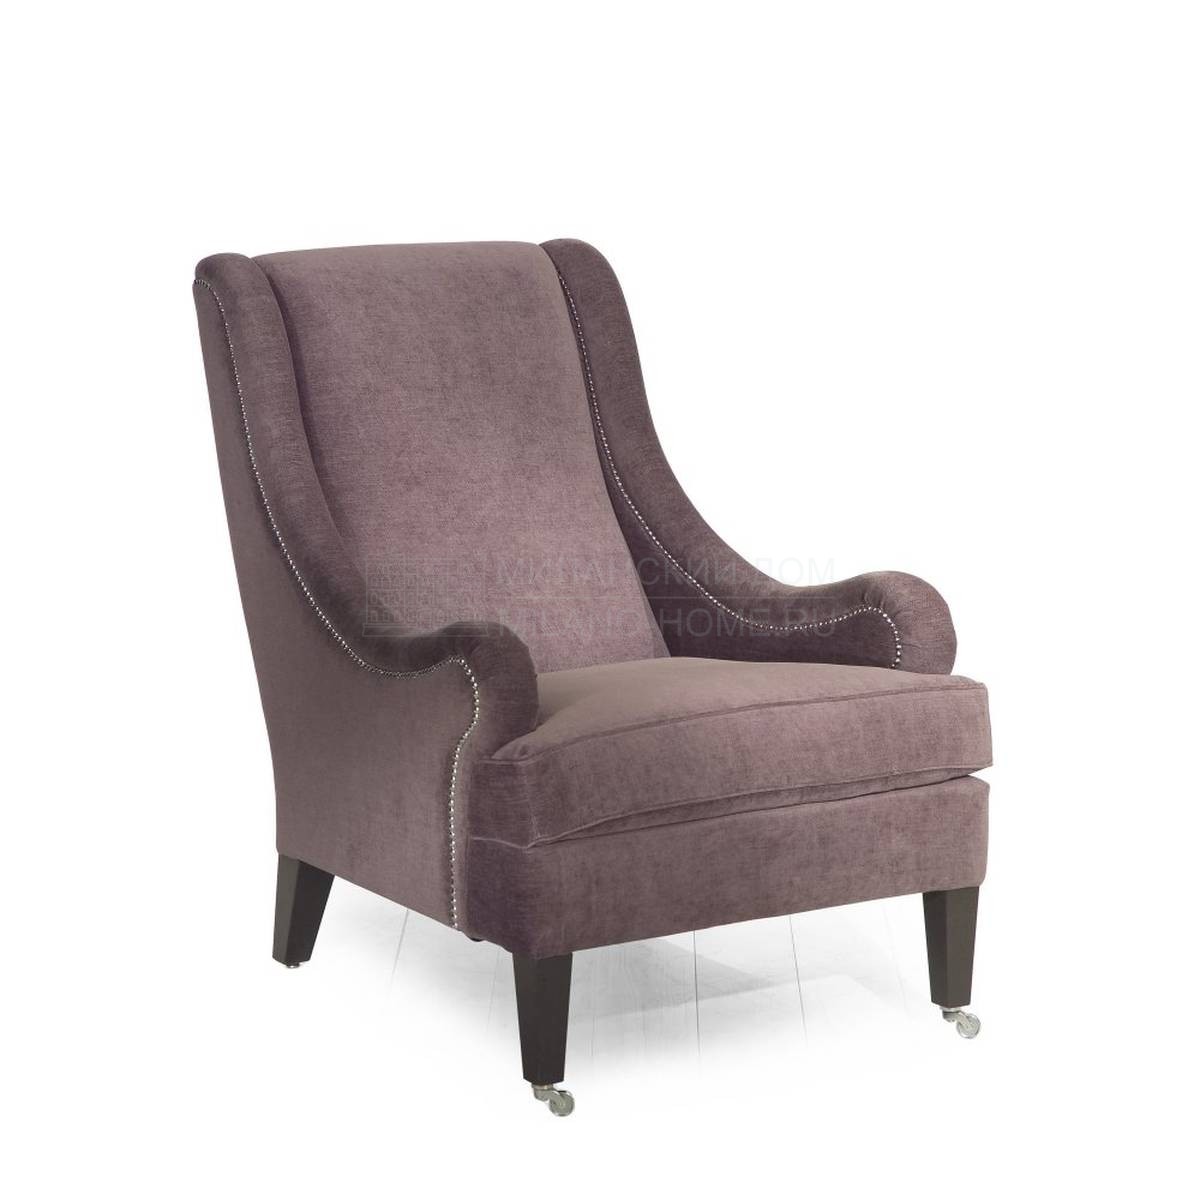 Кресло Lily armchair из Италии фабрики MARIONI